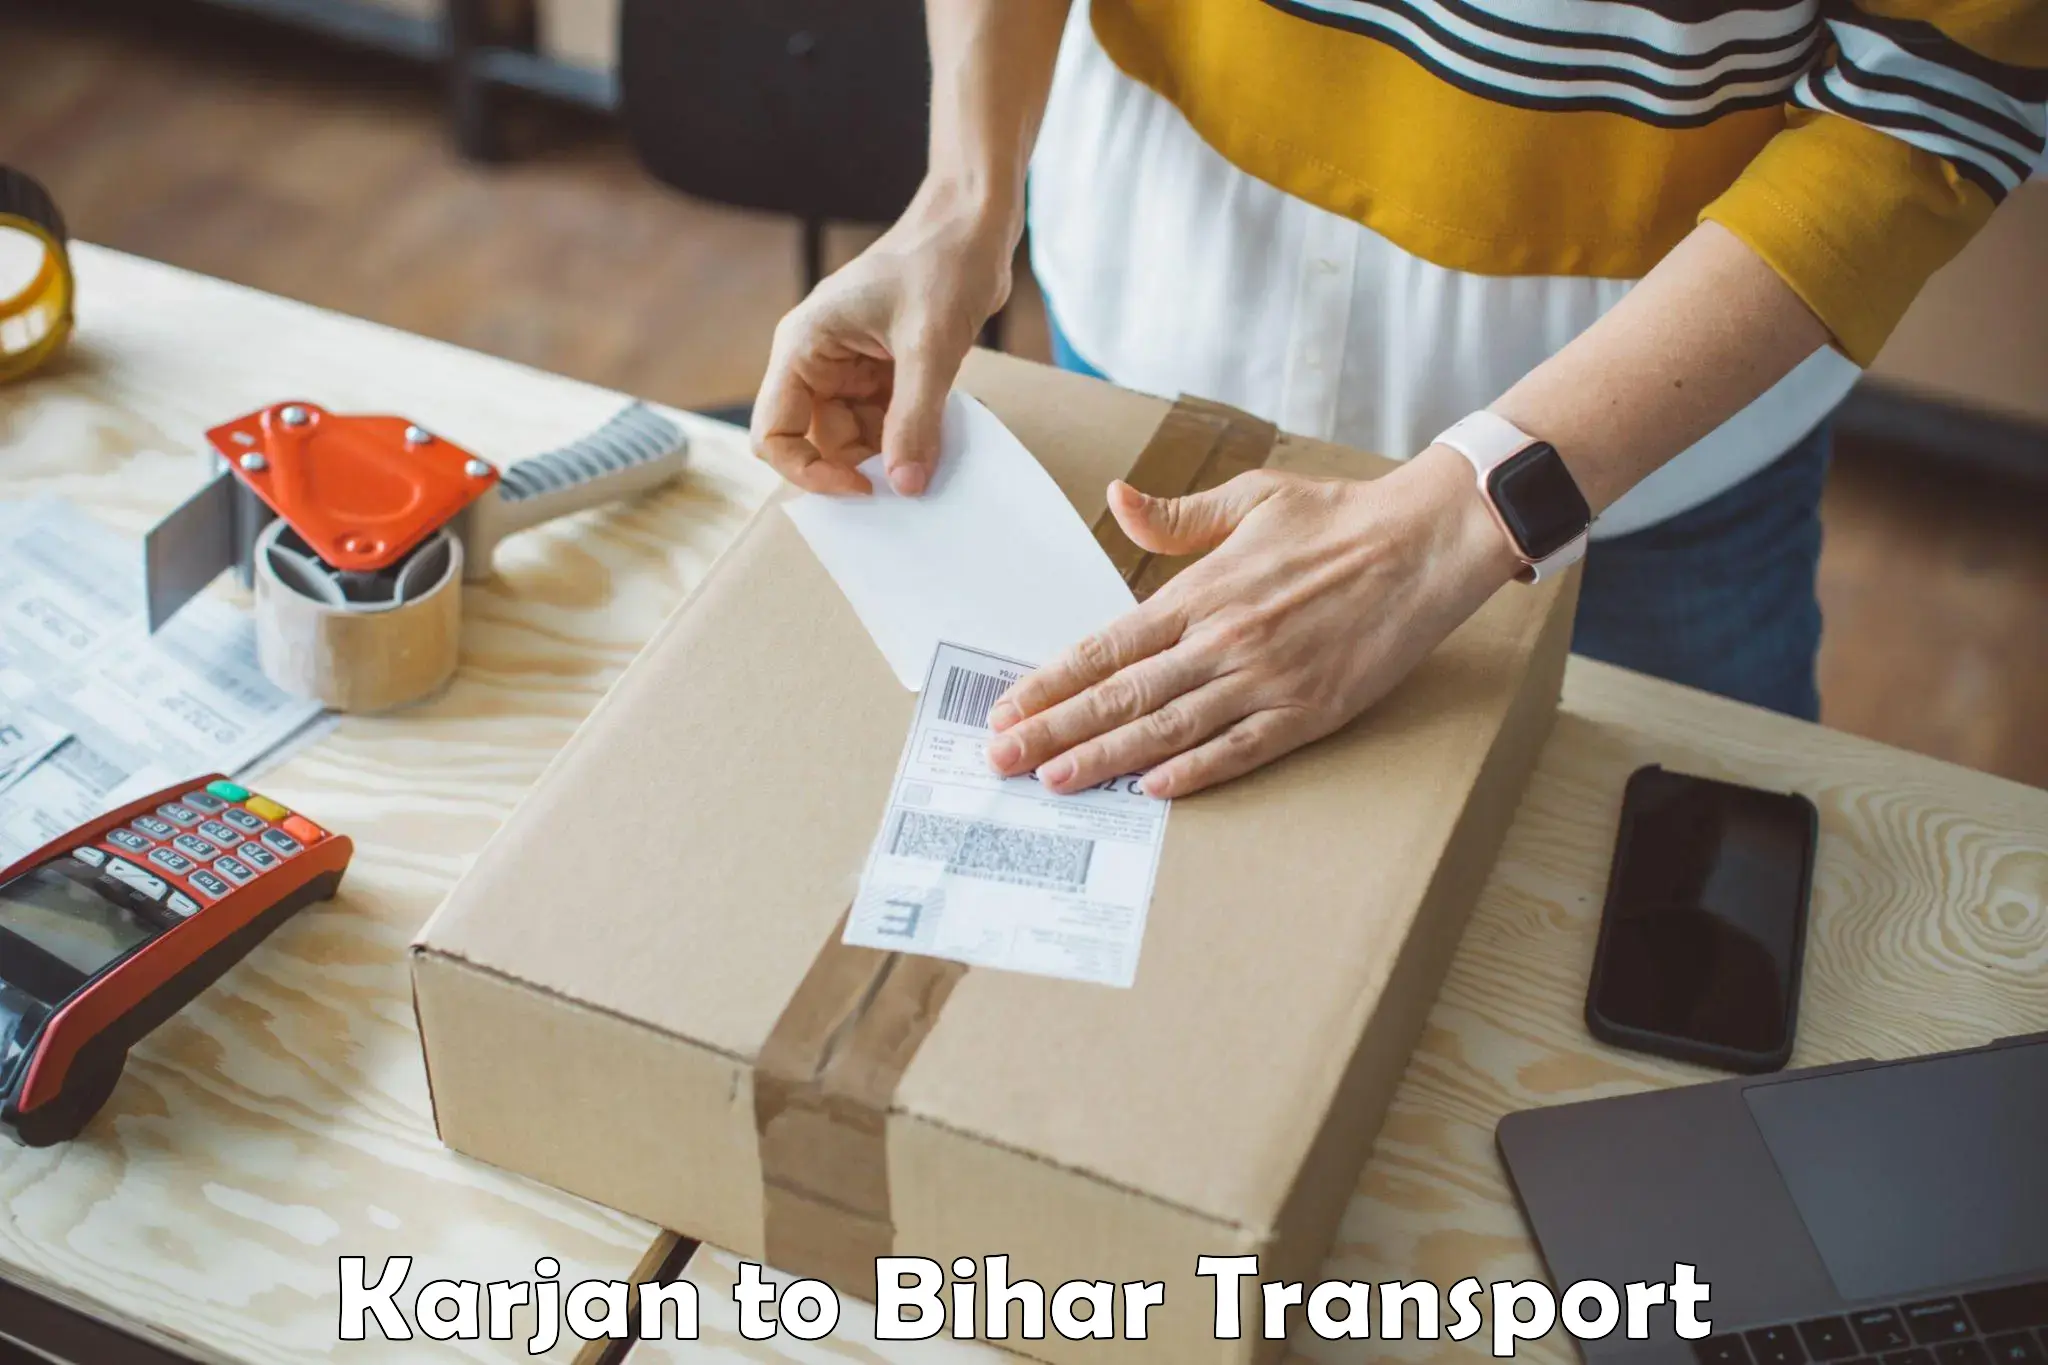 Online transport service Karjan to Bikramganj